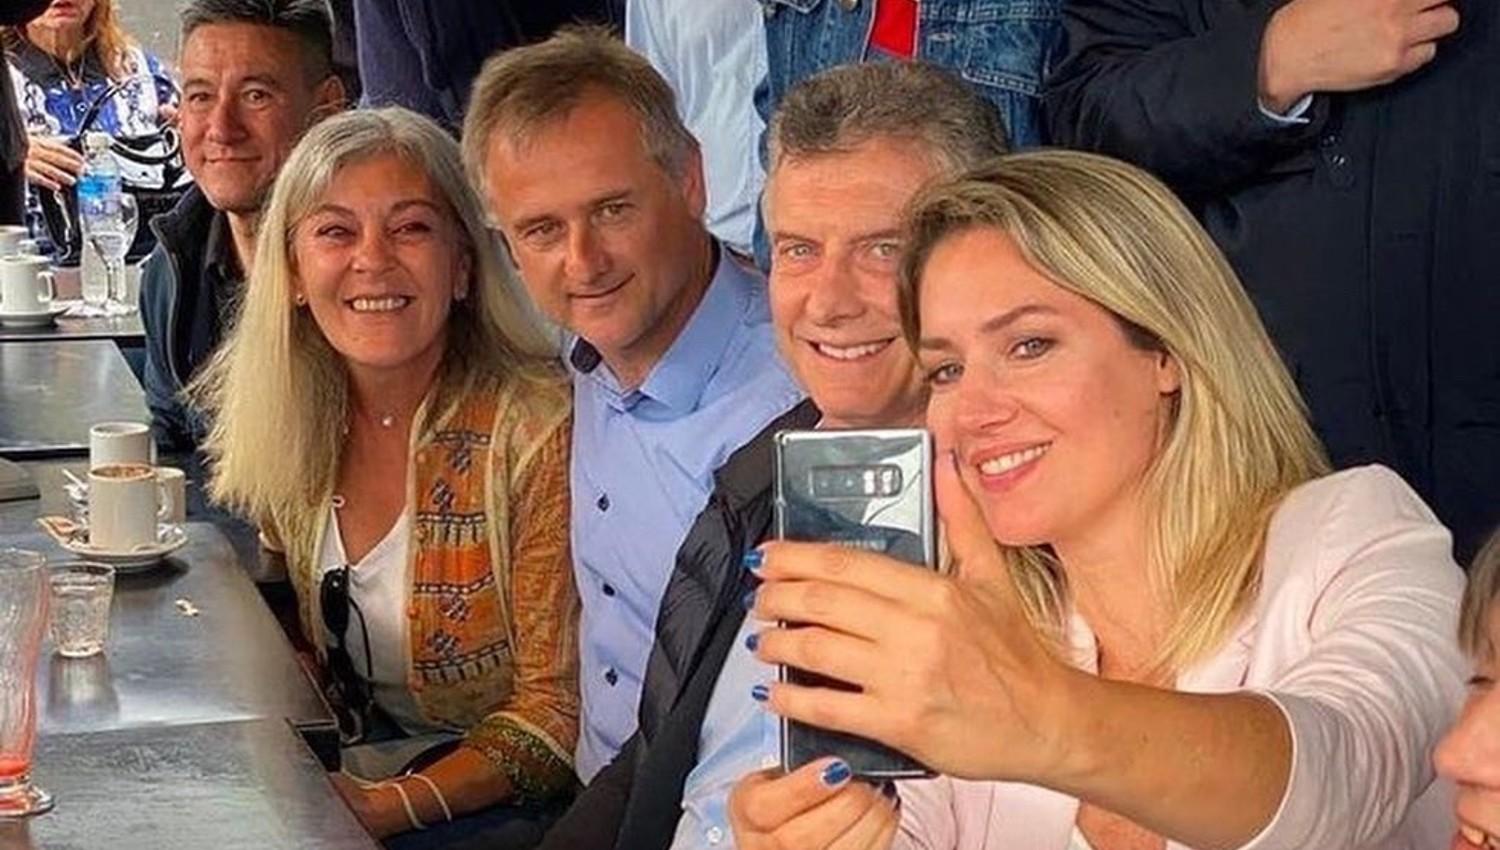 EN EL BAR. Macri posa para una foto tomada por la candidata a senadora Carolina Losada y el candidato a diputado Mario Barletta., 